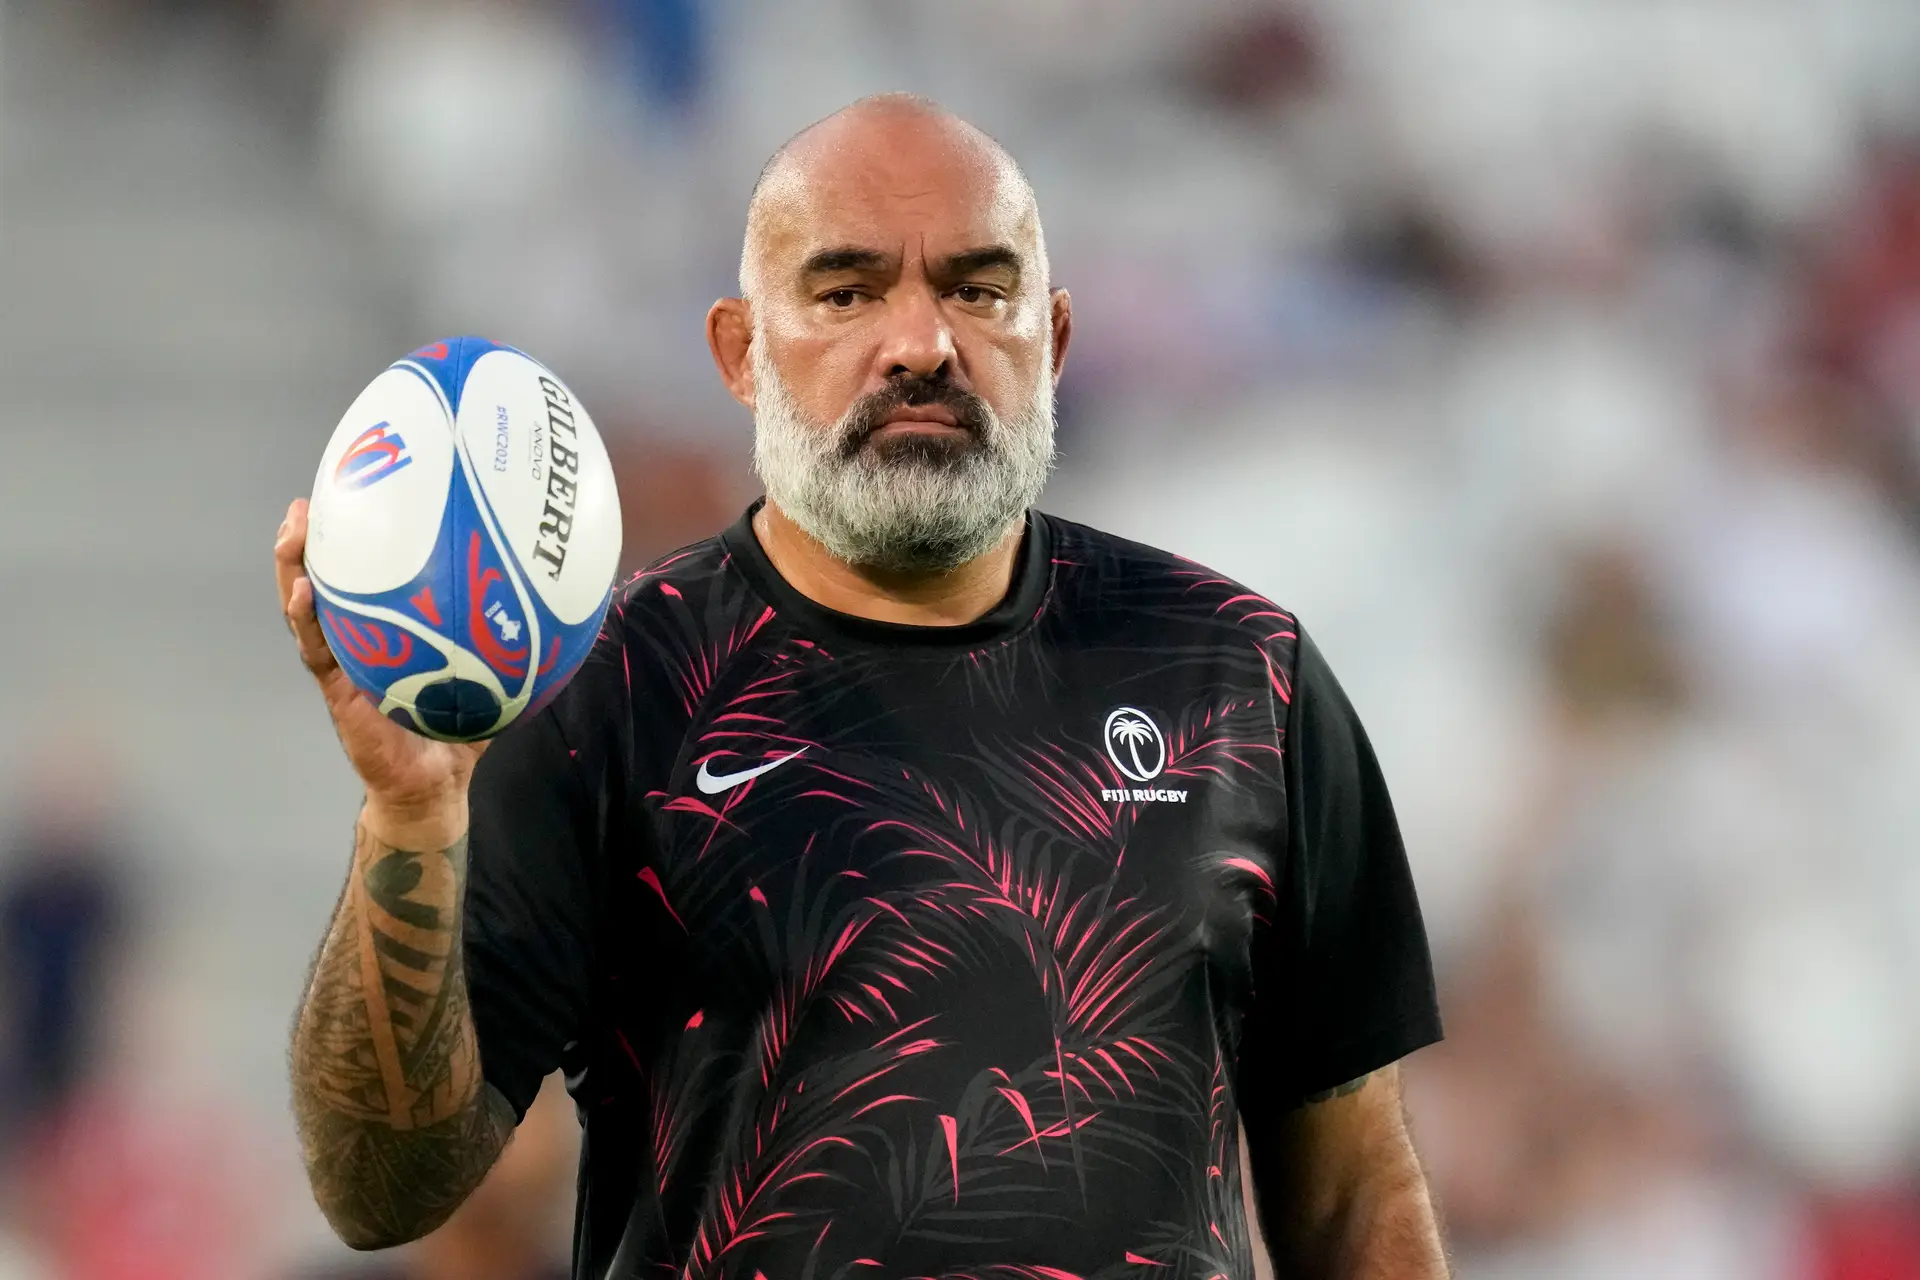 Mundial de râguebi: treinador das Fiji dá presente aos Lobos após